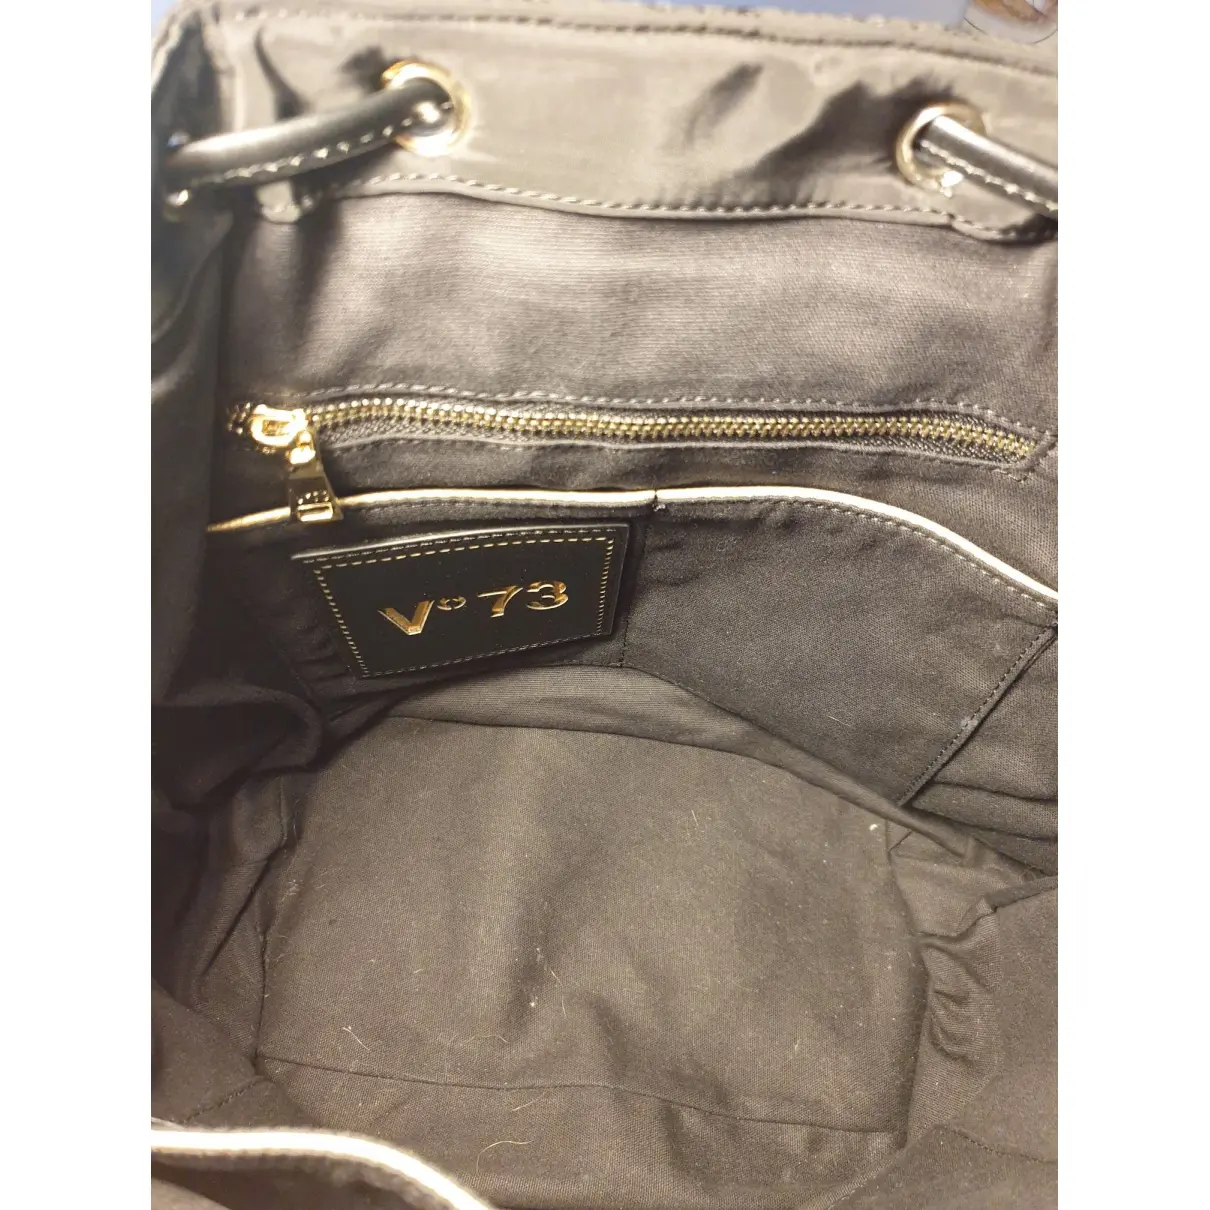 Cloth backpack V 73